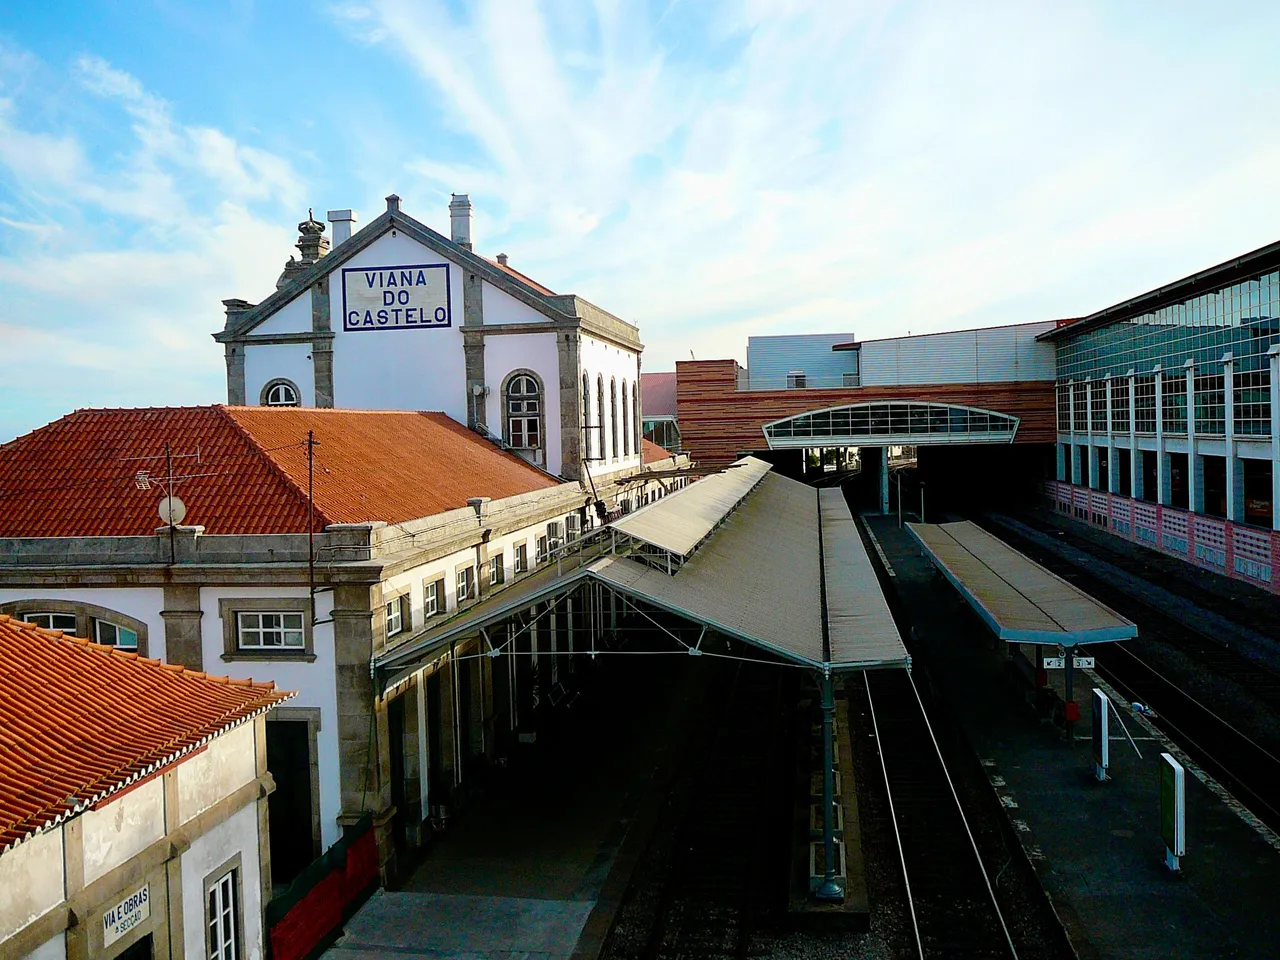 TrainStation_VianaDoCastelo.jpg